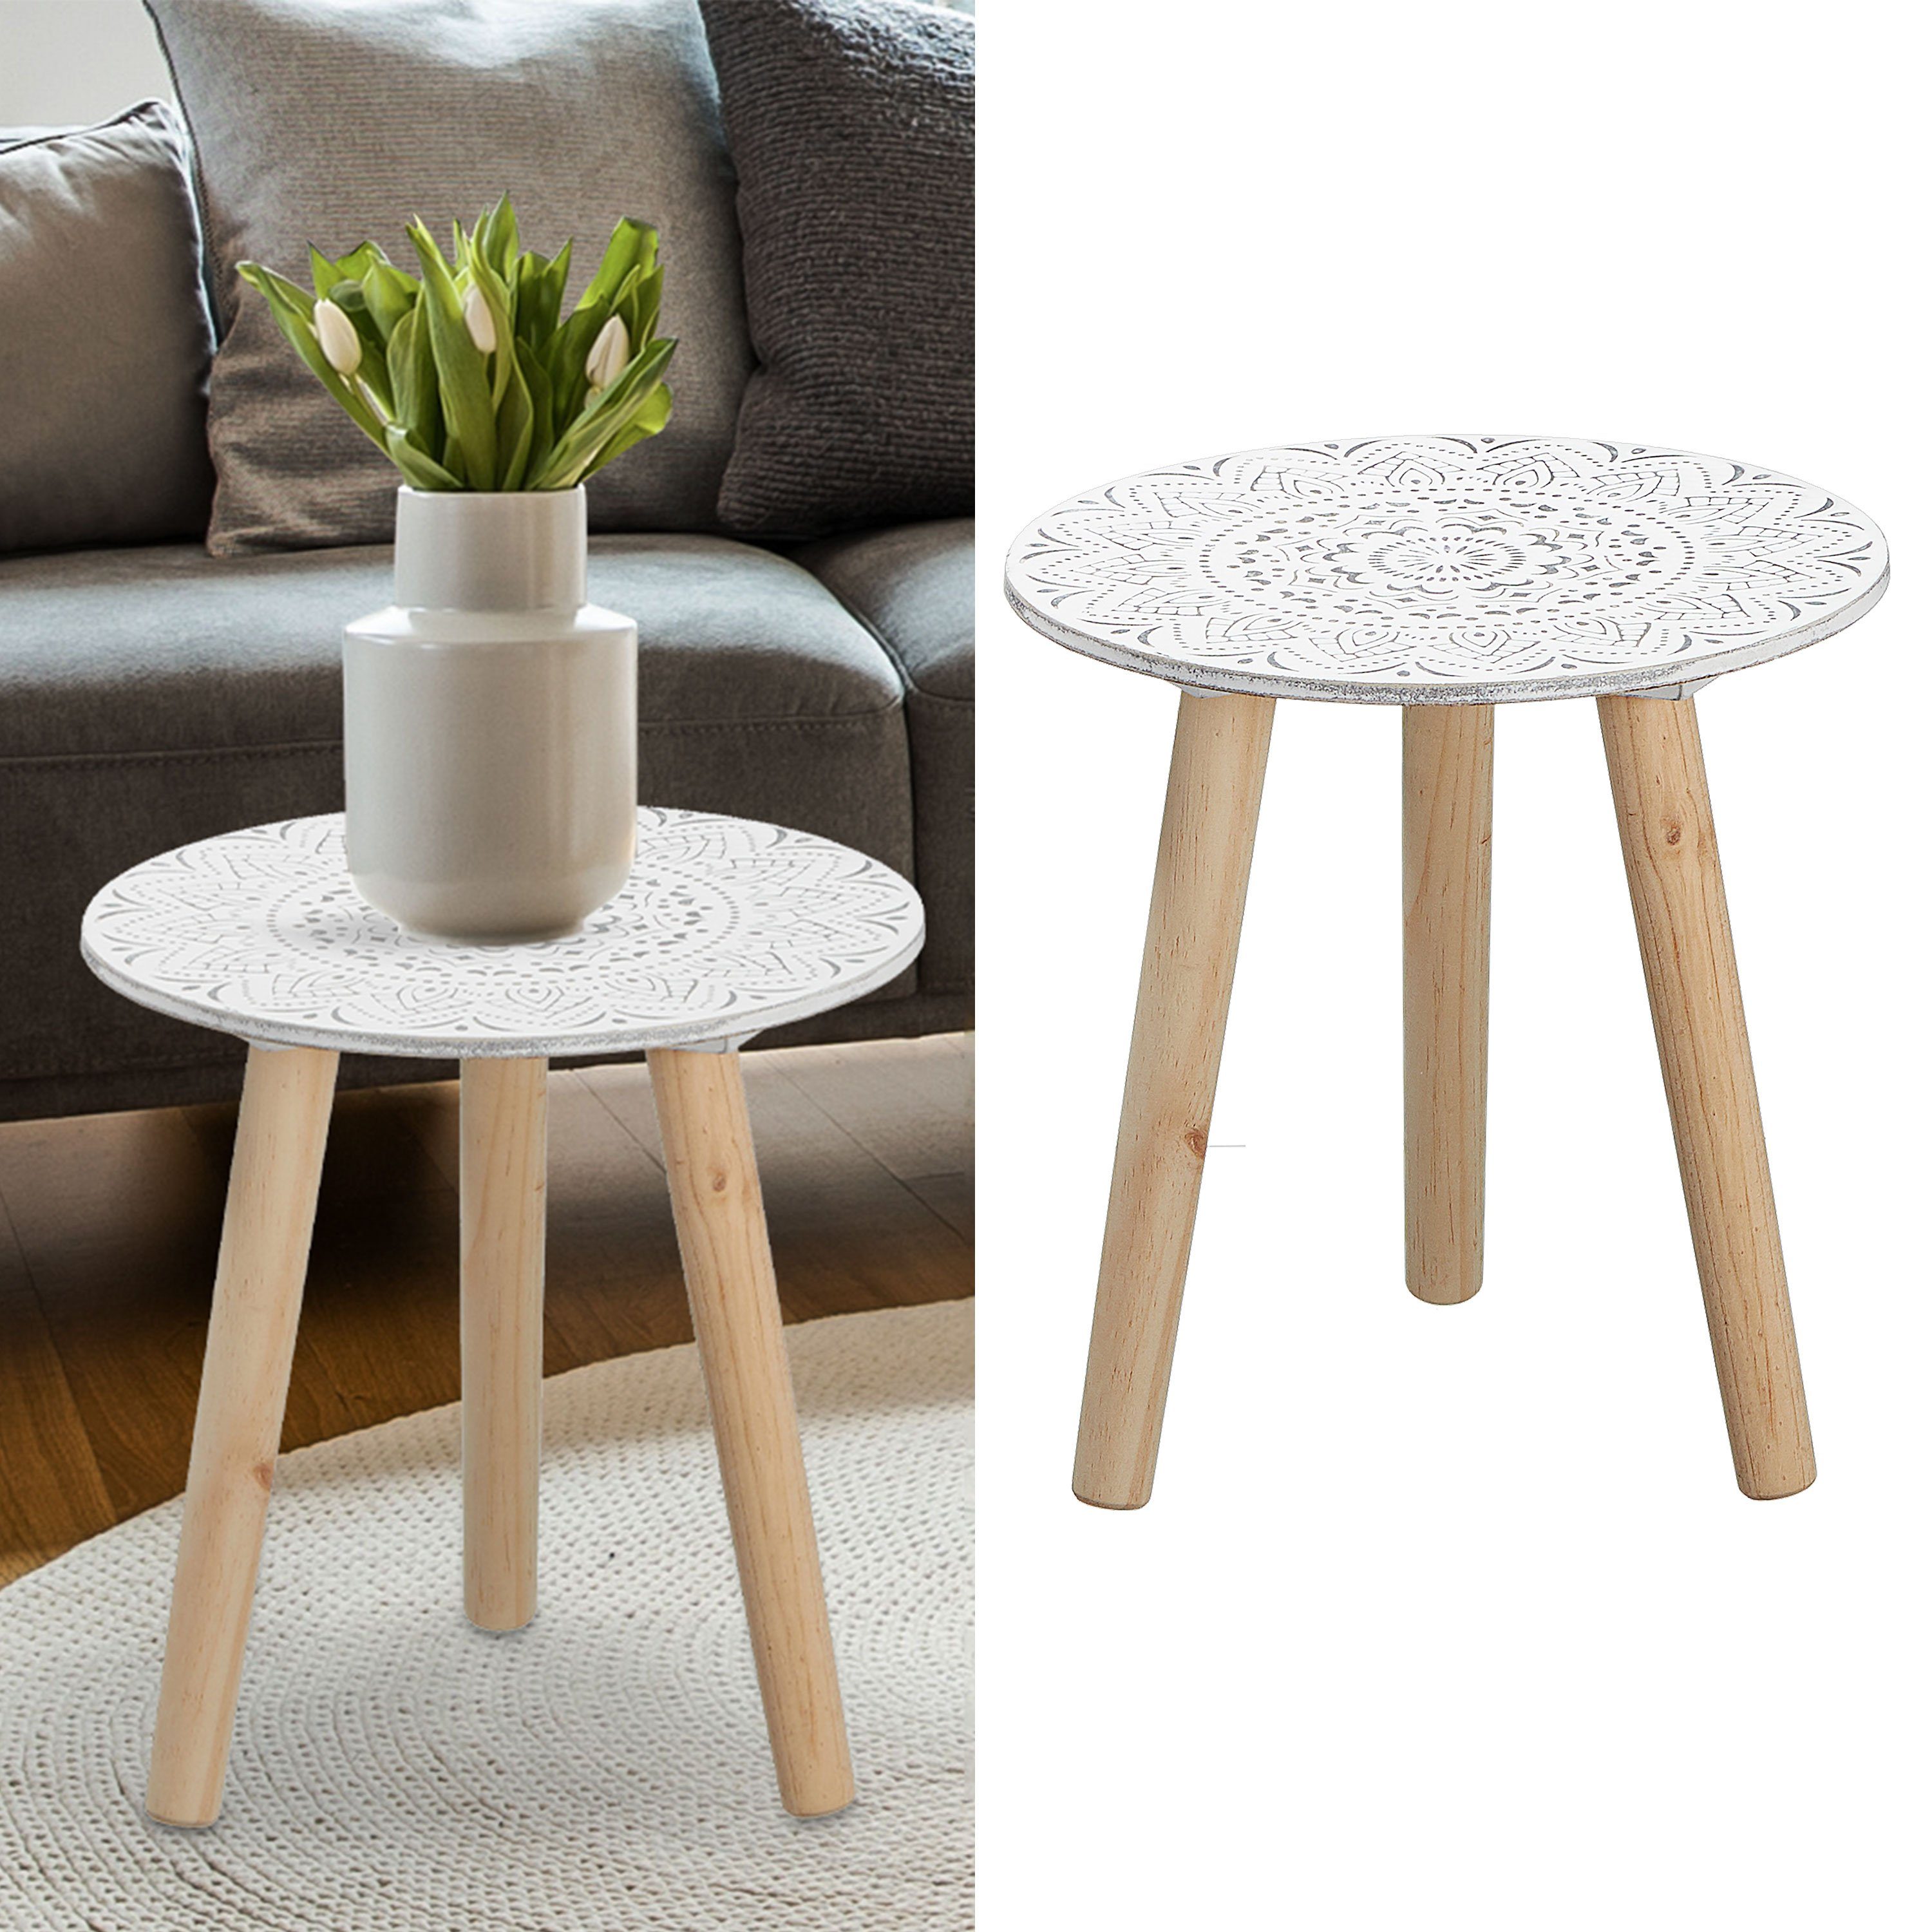 CEPEWA Beistelltisch Beistellisch dreibeinig Holztisch weiß 30x29cm Platte Mandala-Design